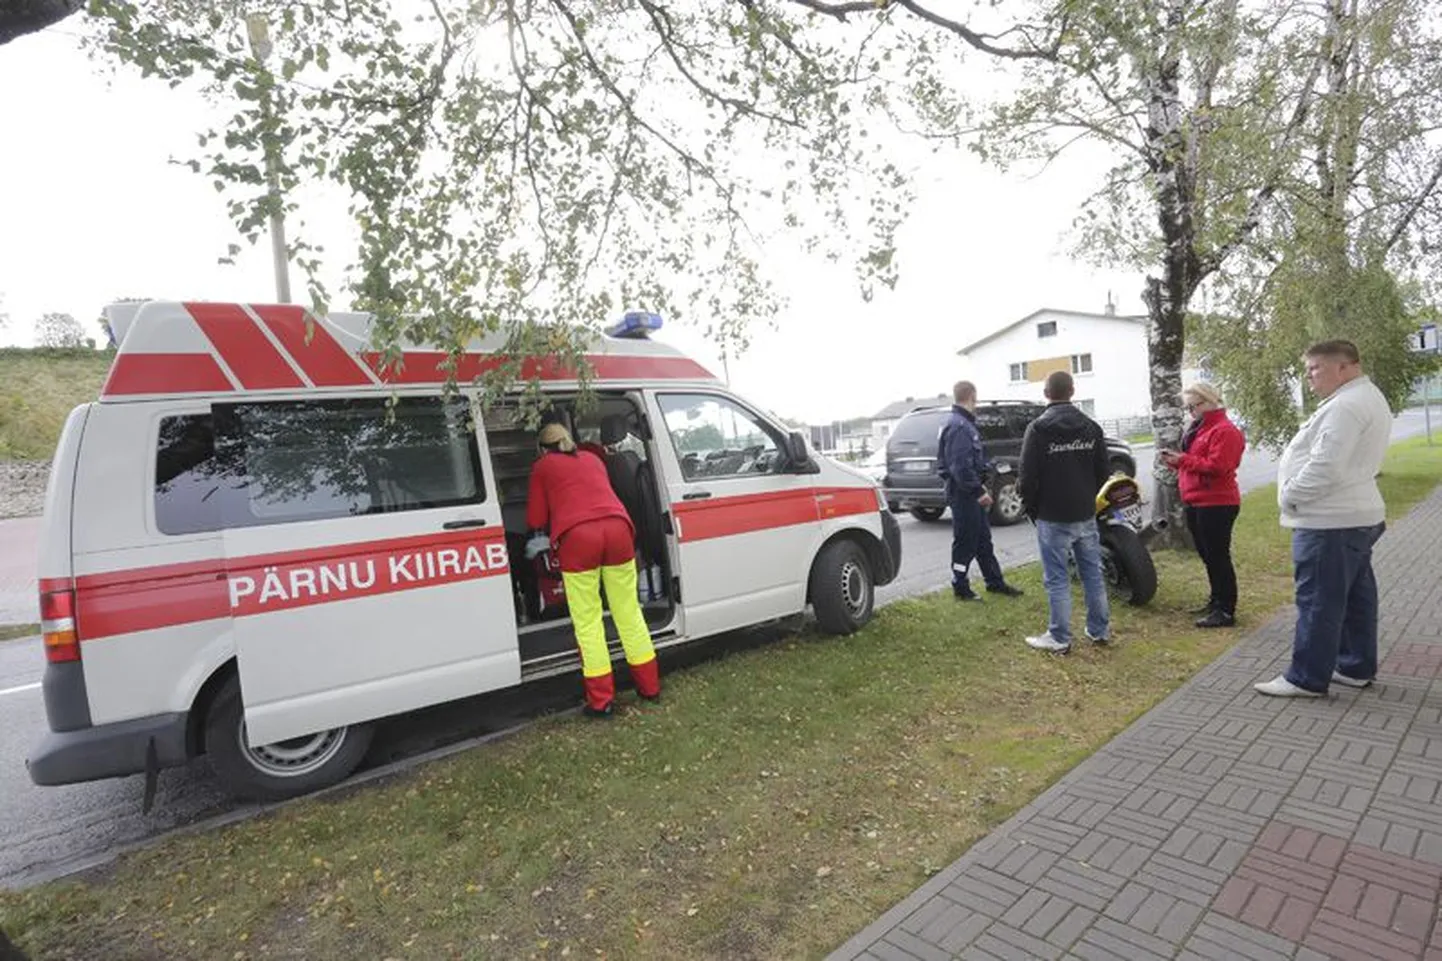 Pärnu kiirabibrigaad annab kahe politseipatrulli turvamisel esmaabi kukkunud tsiklimehele.